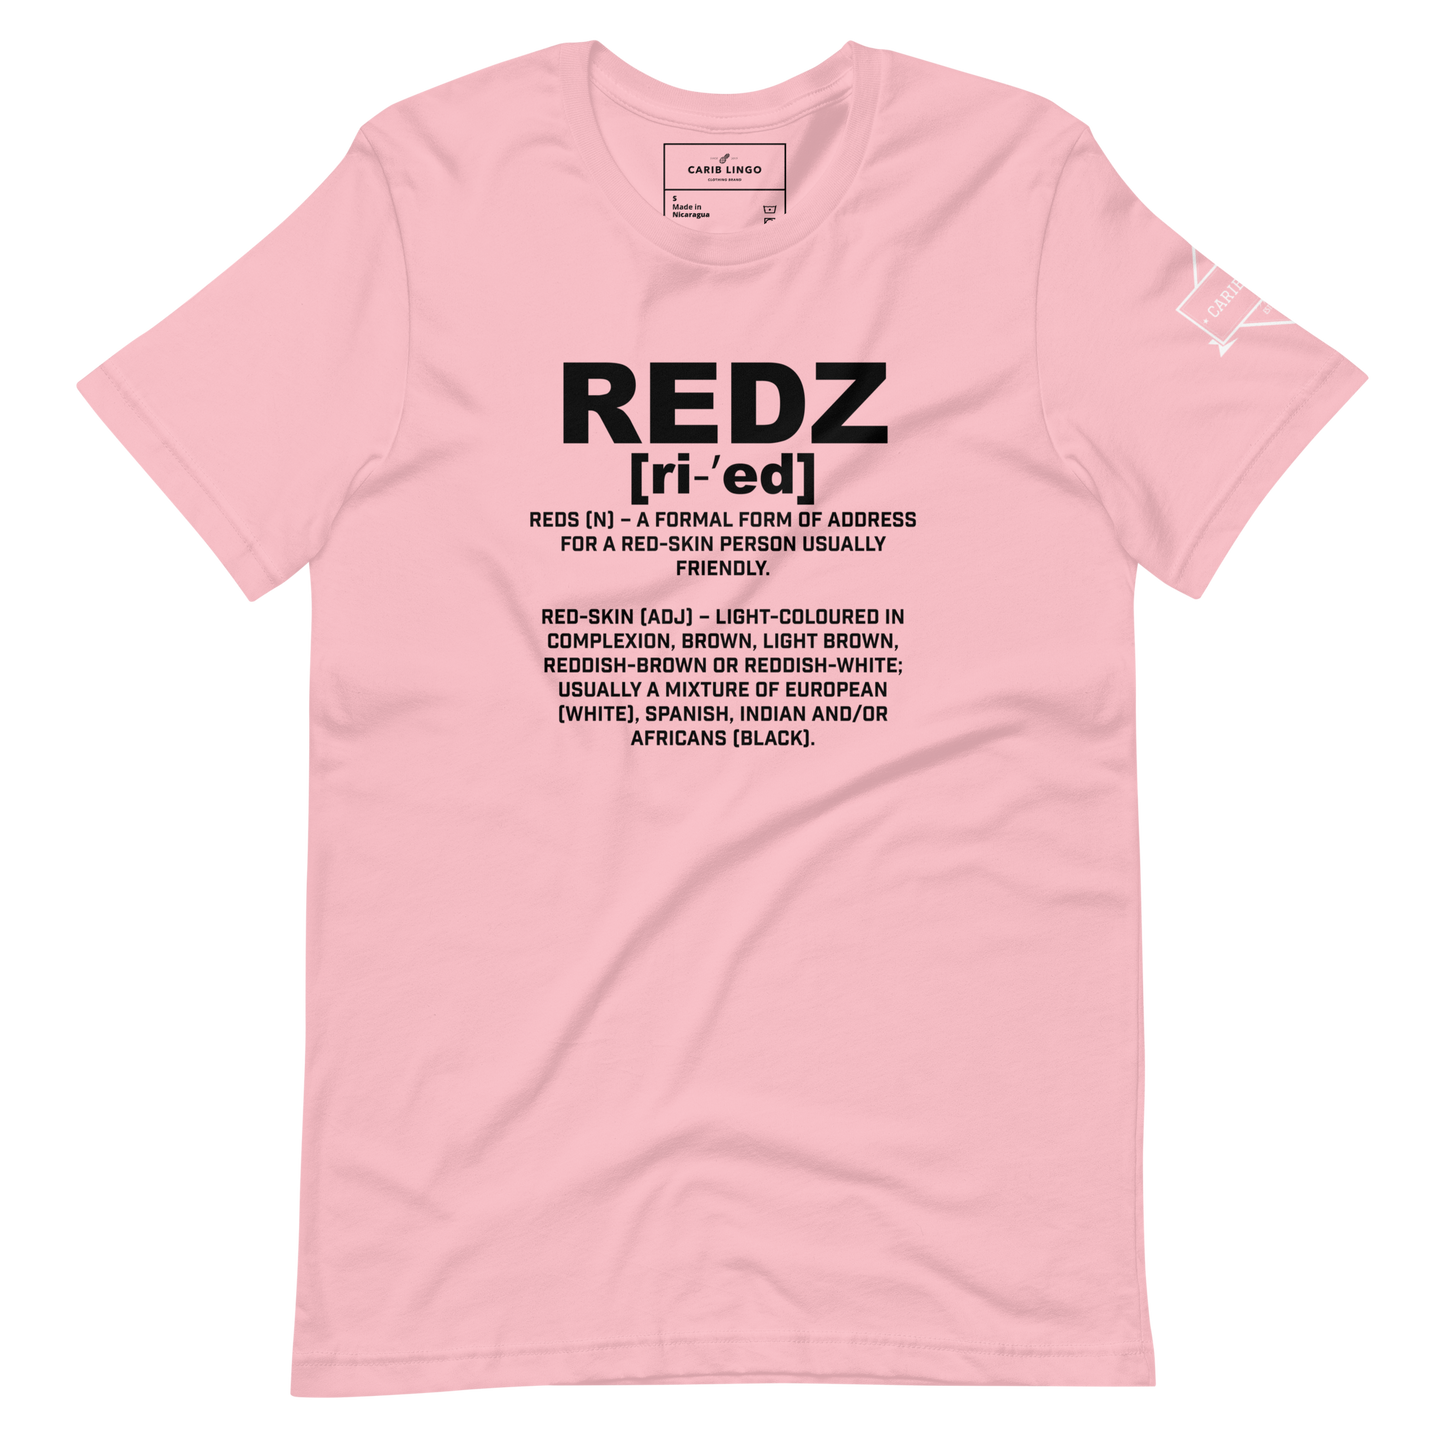 Redz t-shirt